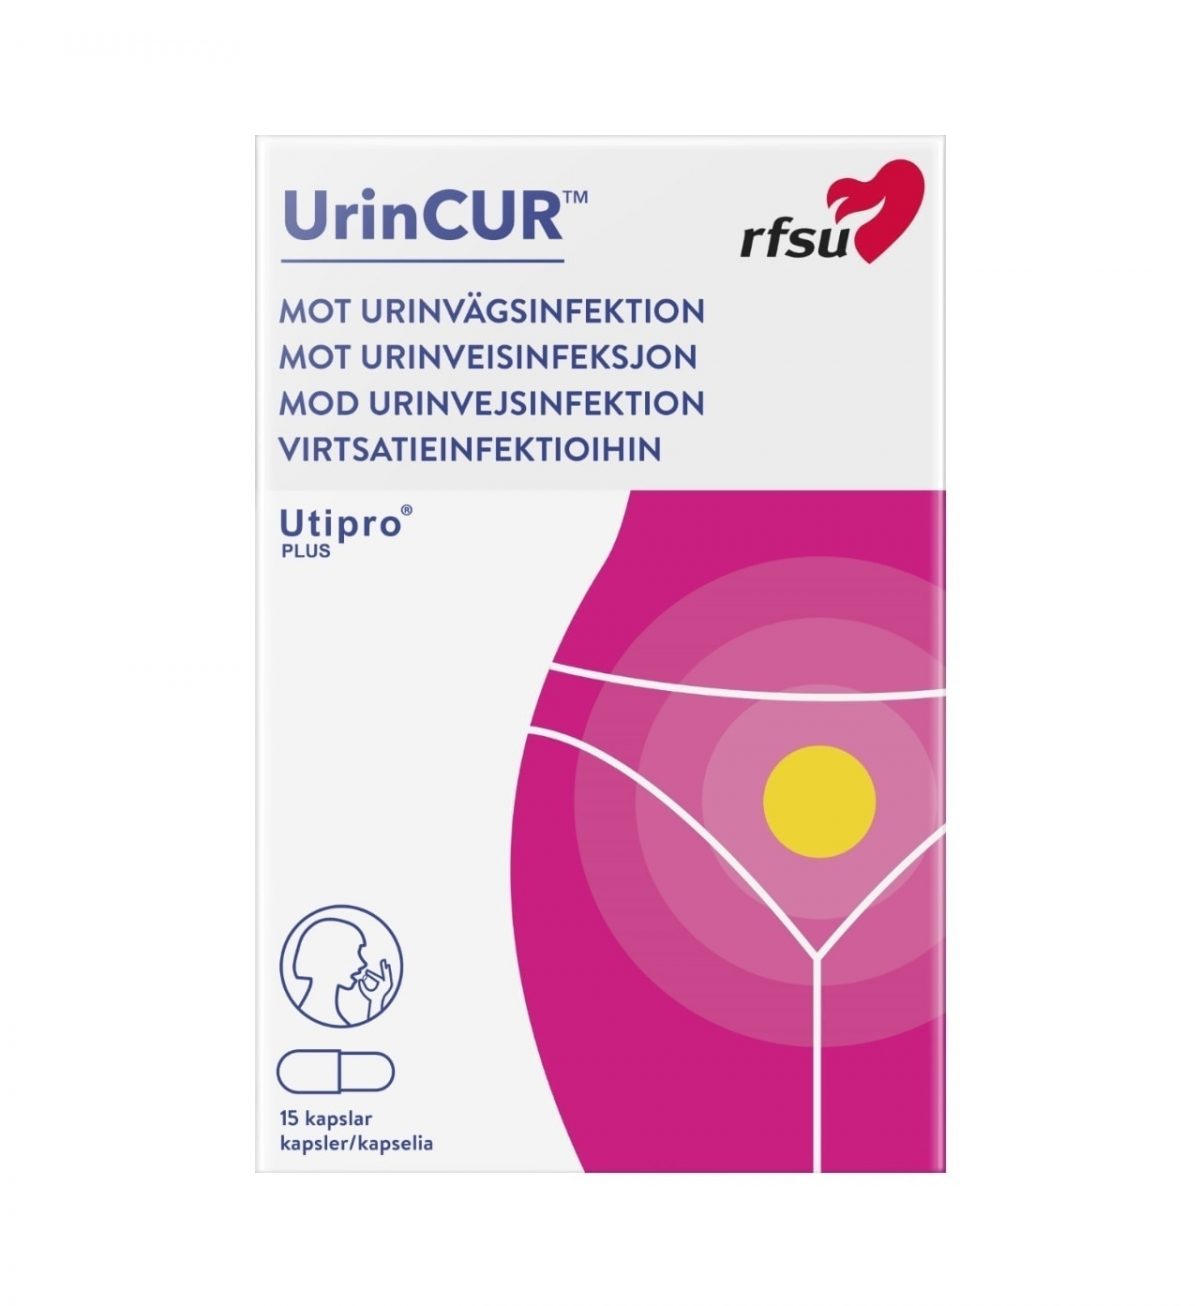 urincur rfsu urinvagsinfektion